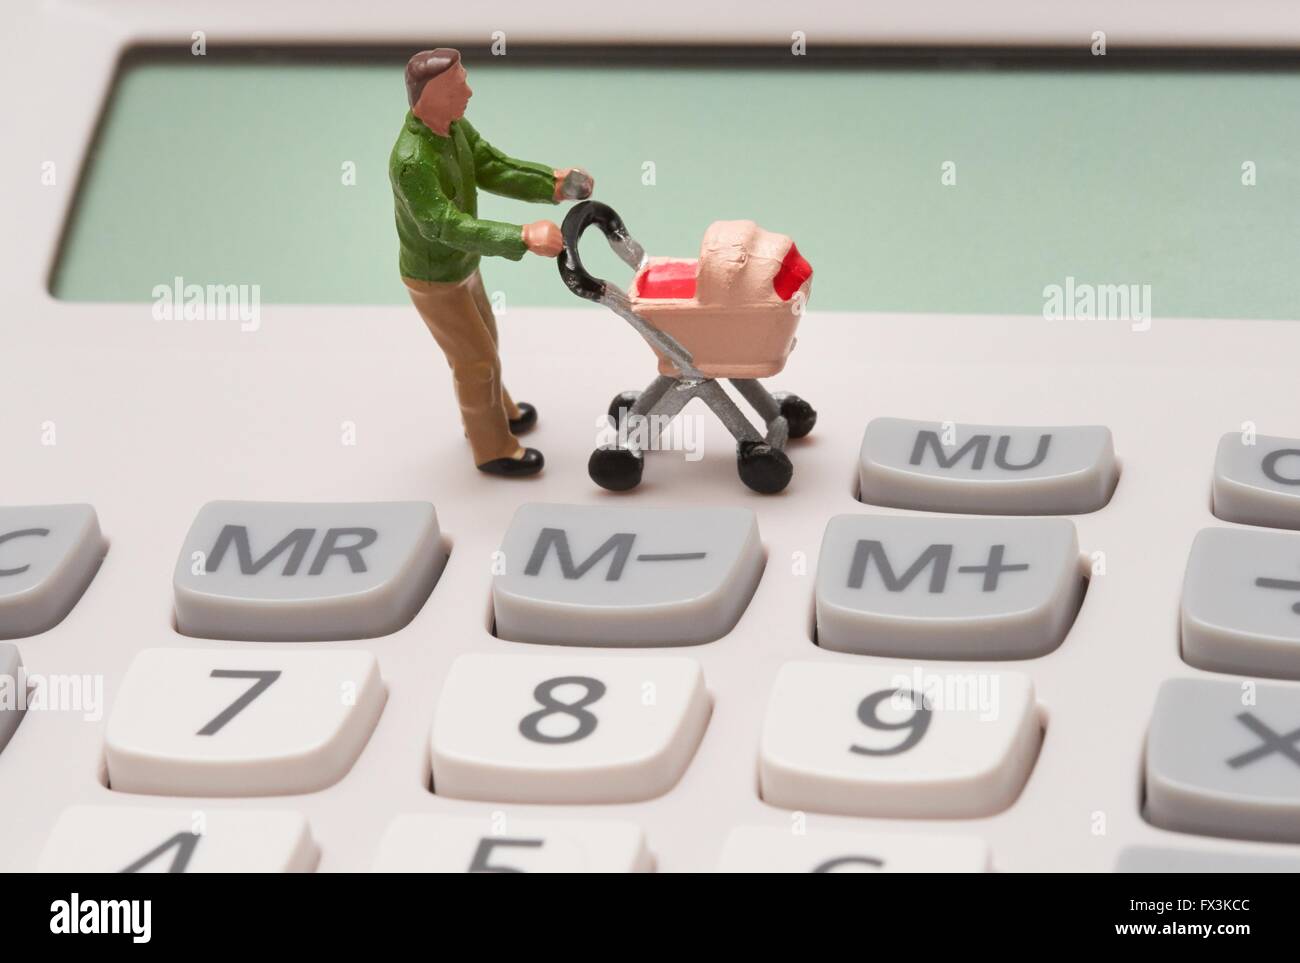 Un seul parent figurine miniature mâle poussant un landau sur les touches de la calculatrice Banque D'Images